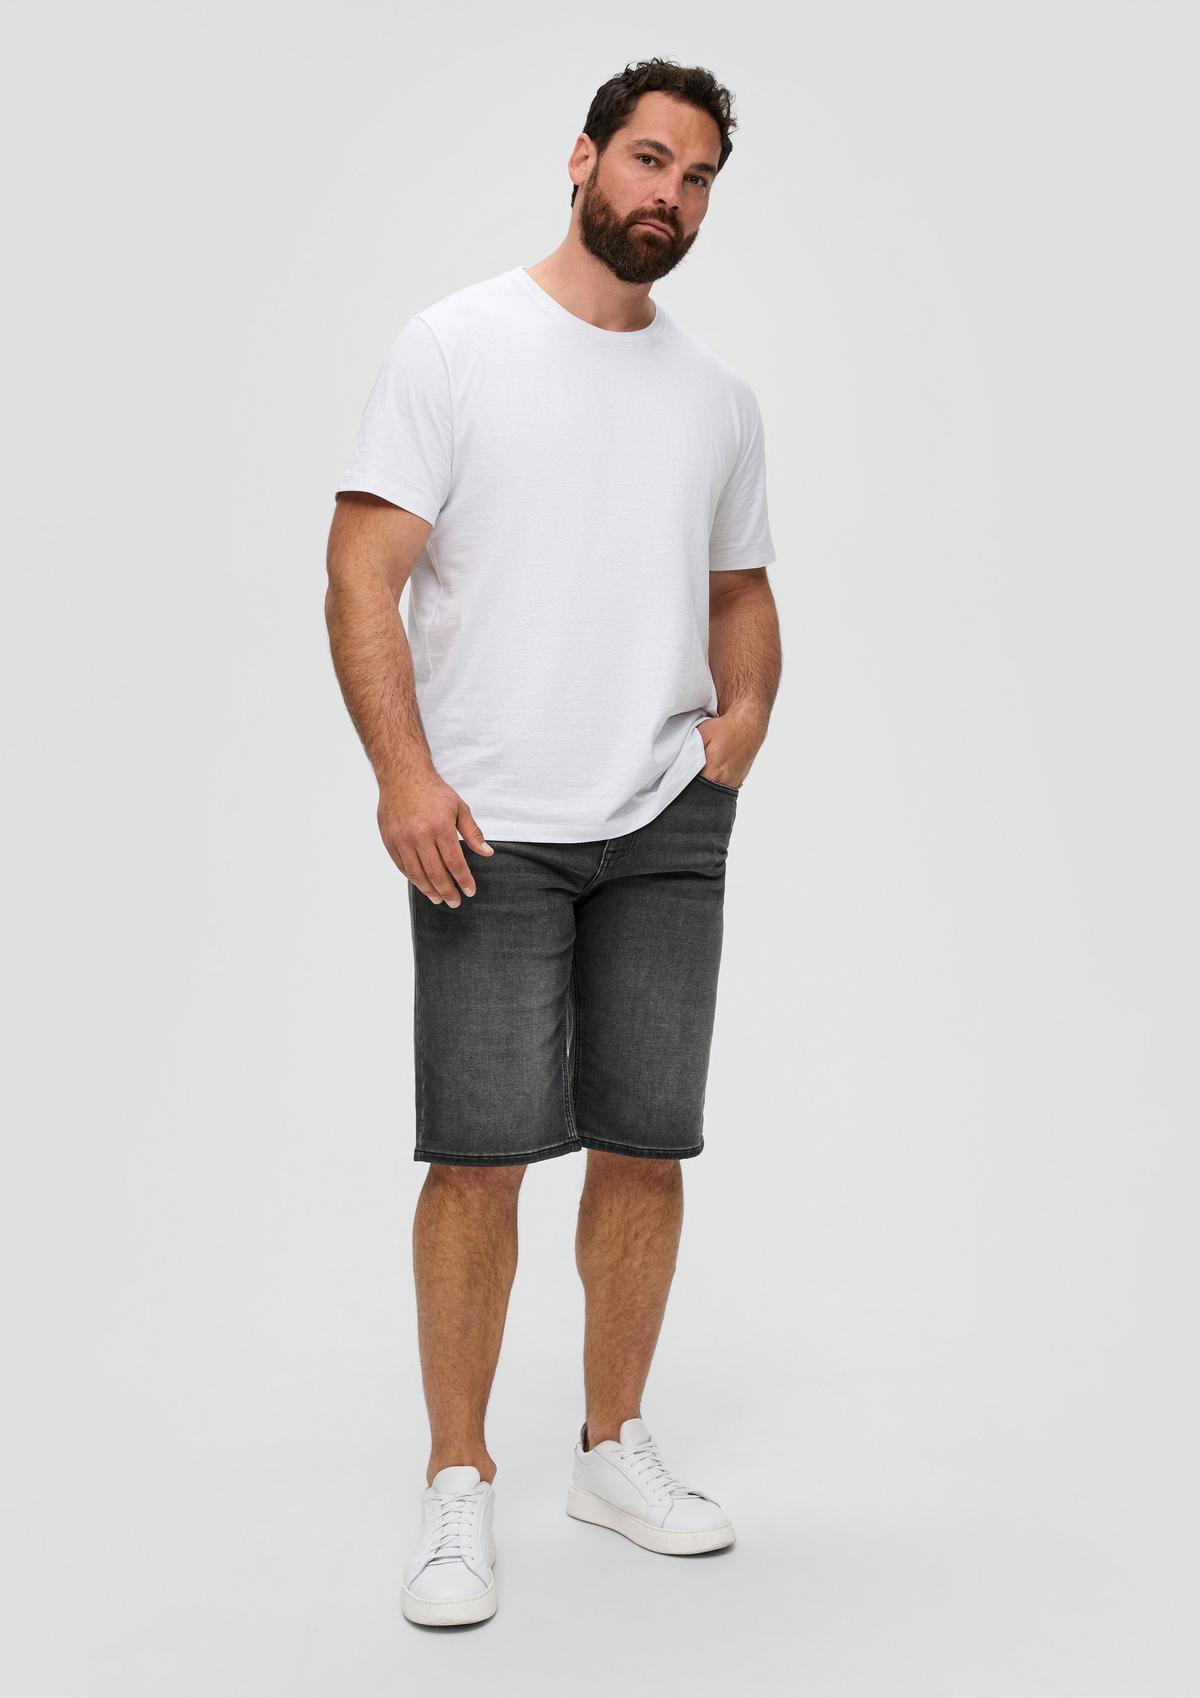 s.Oliver Bermuda jeans hlače Mauro/kroj Regular Fit/Mid Rise/ravne hlačnice